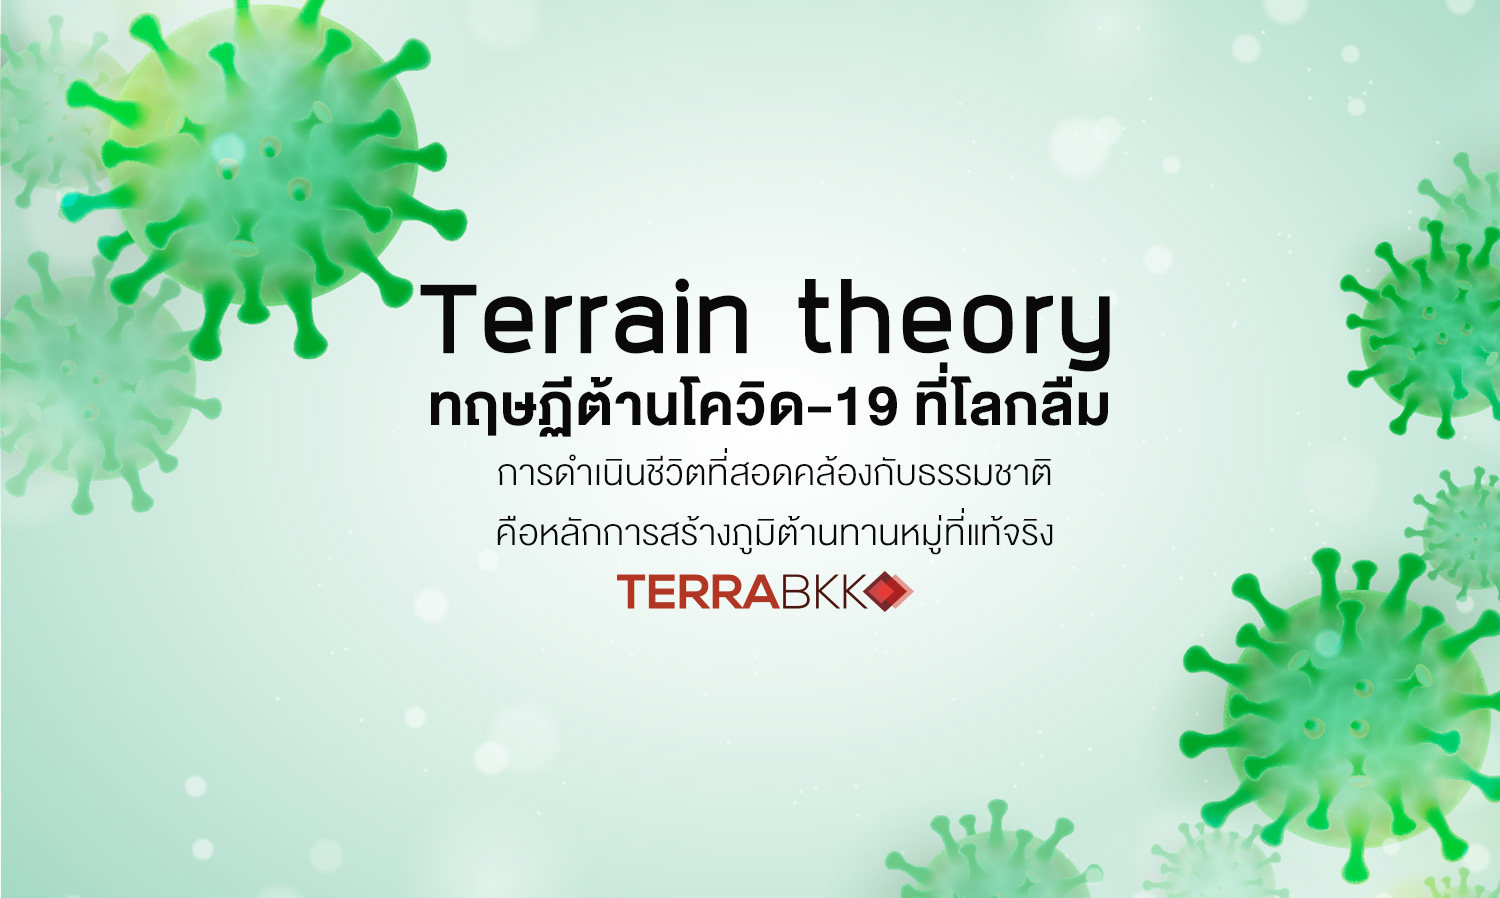 terrain-theory-ทฤษฏี-ต้าน-โควิค19-ที่-โลก-ลืม